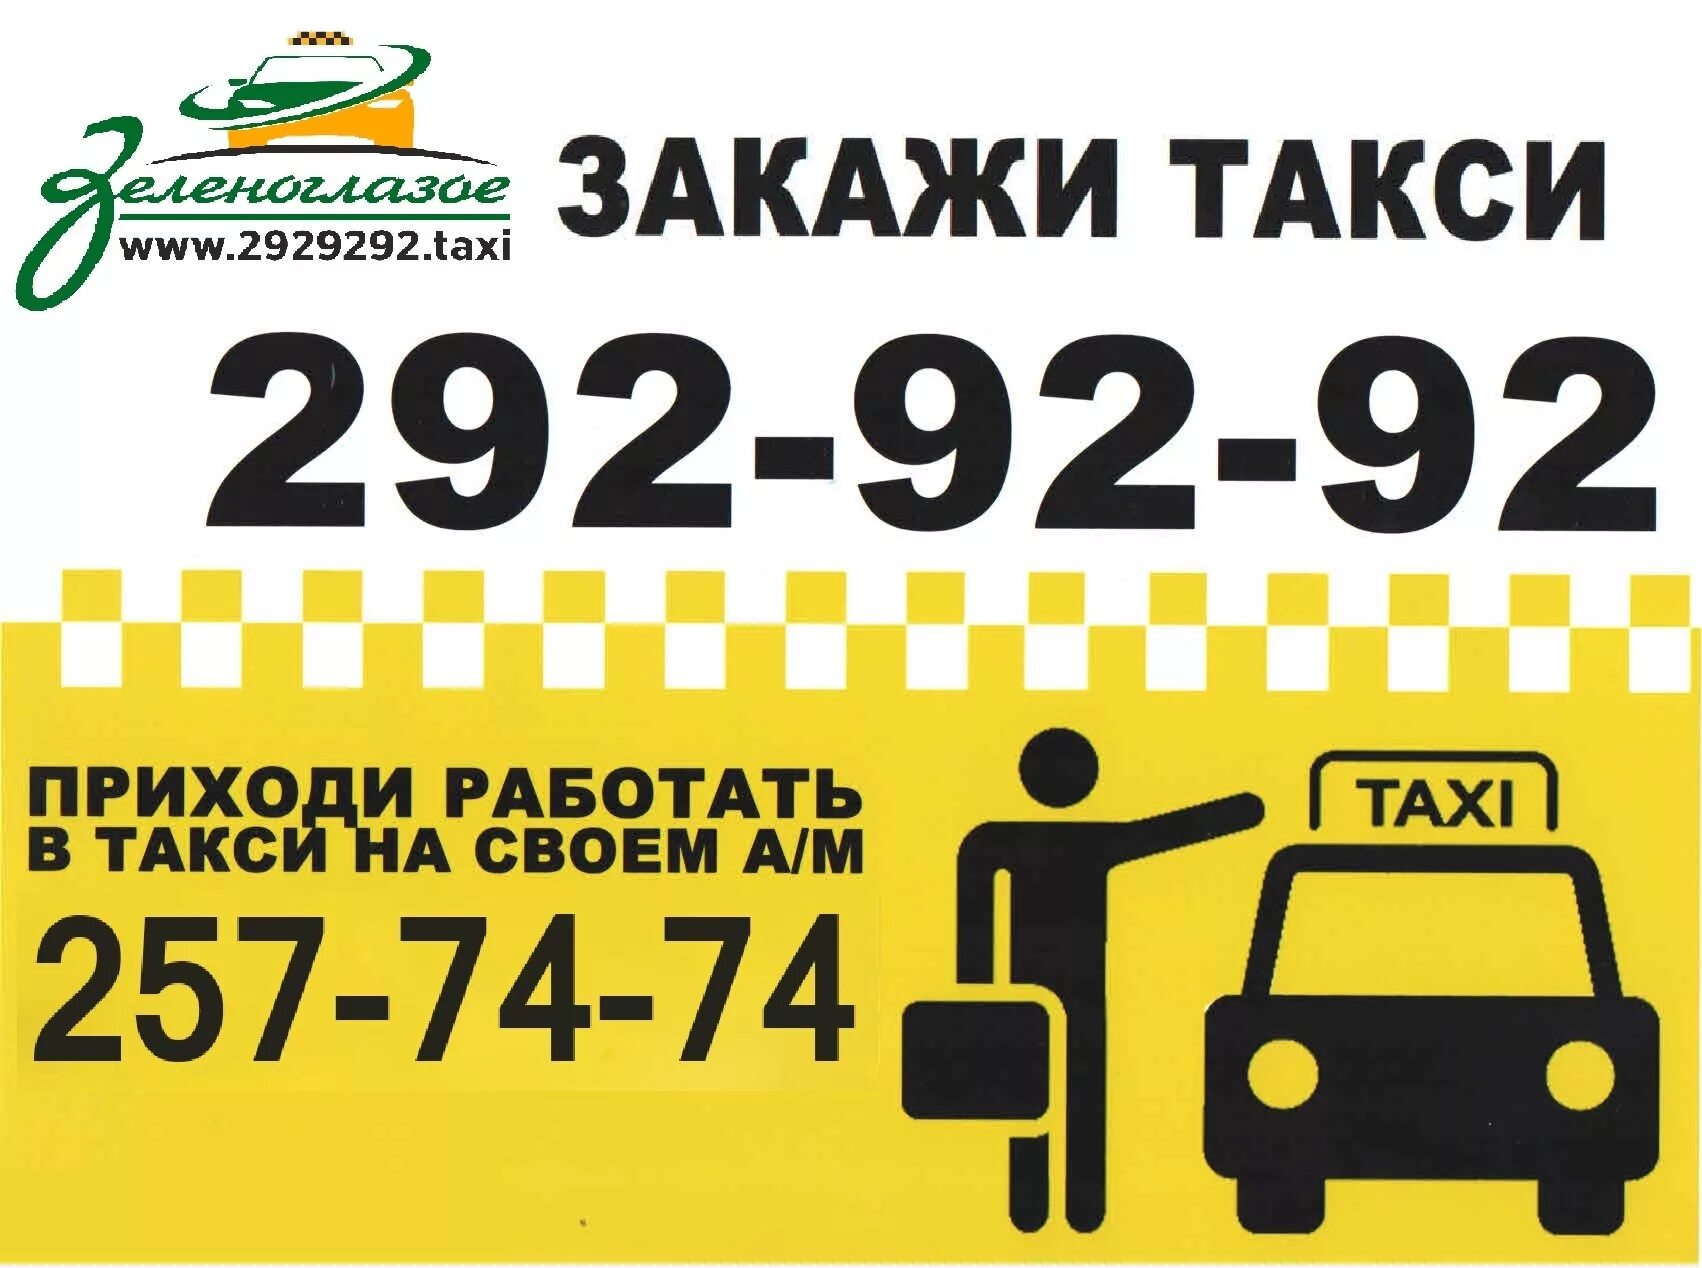 Телефон такси в уфе недорого